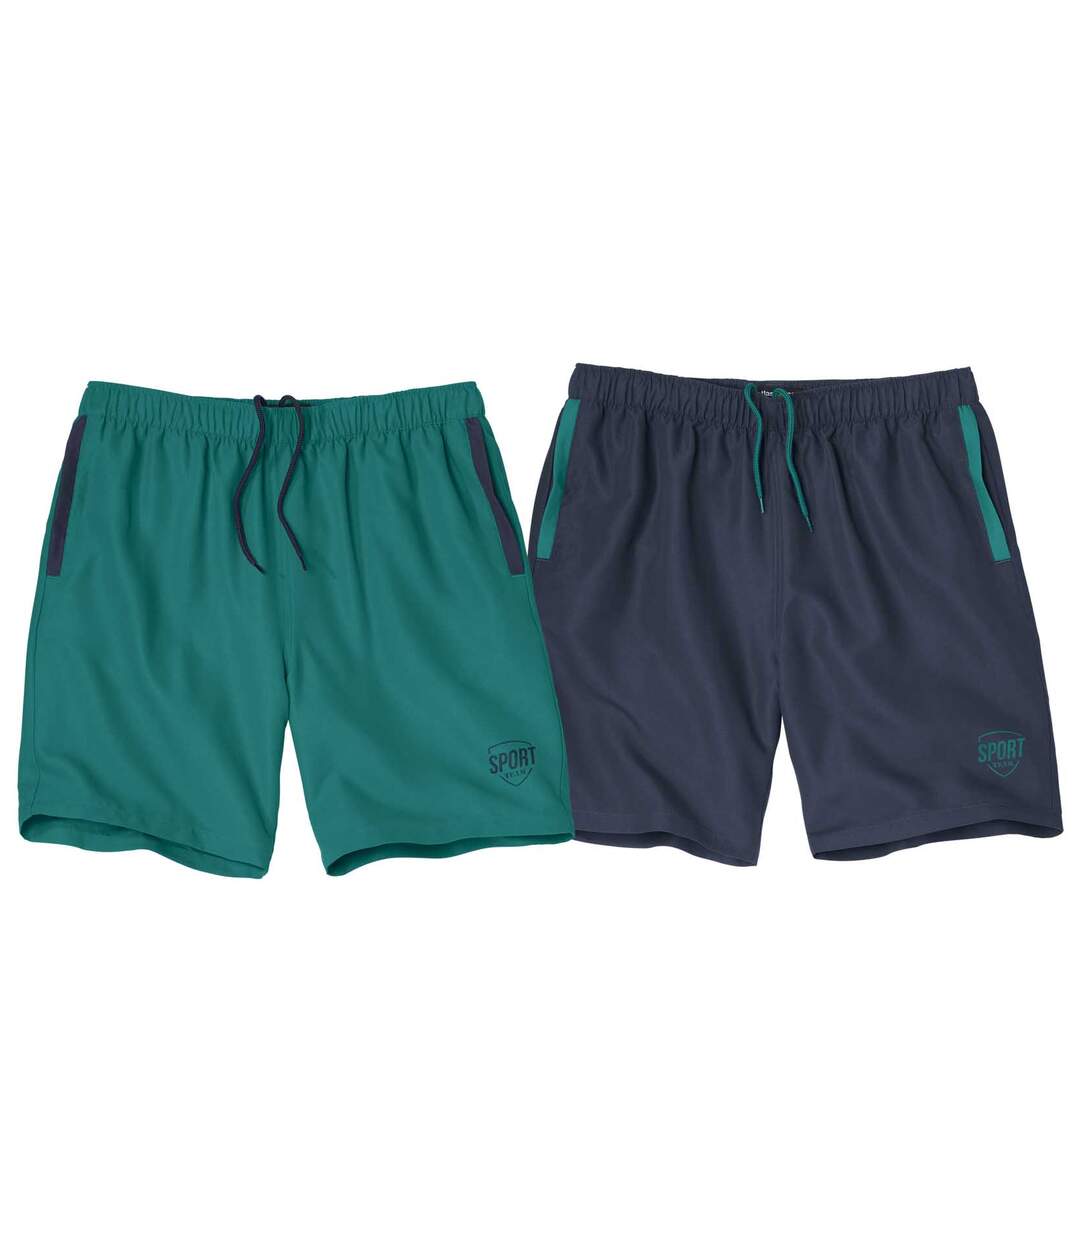 Pack of 2 Men's Summer Shorts - Green Navy Atlas For Men